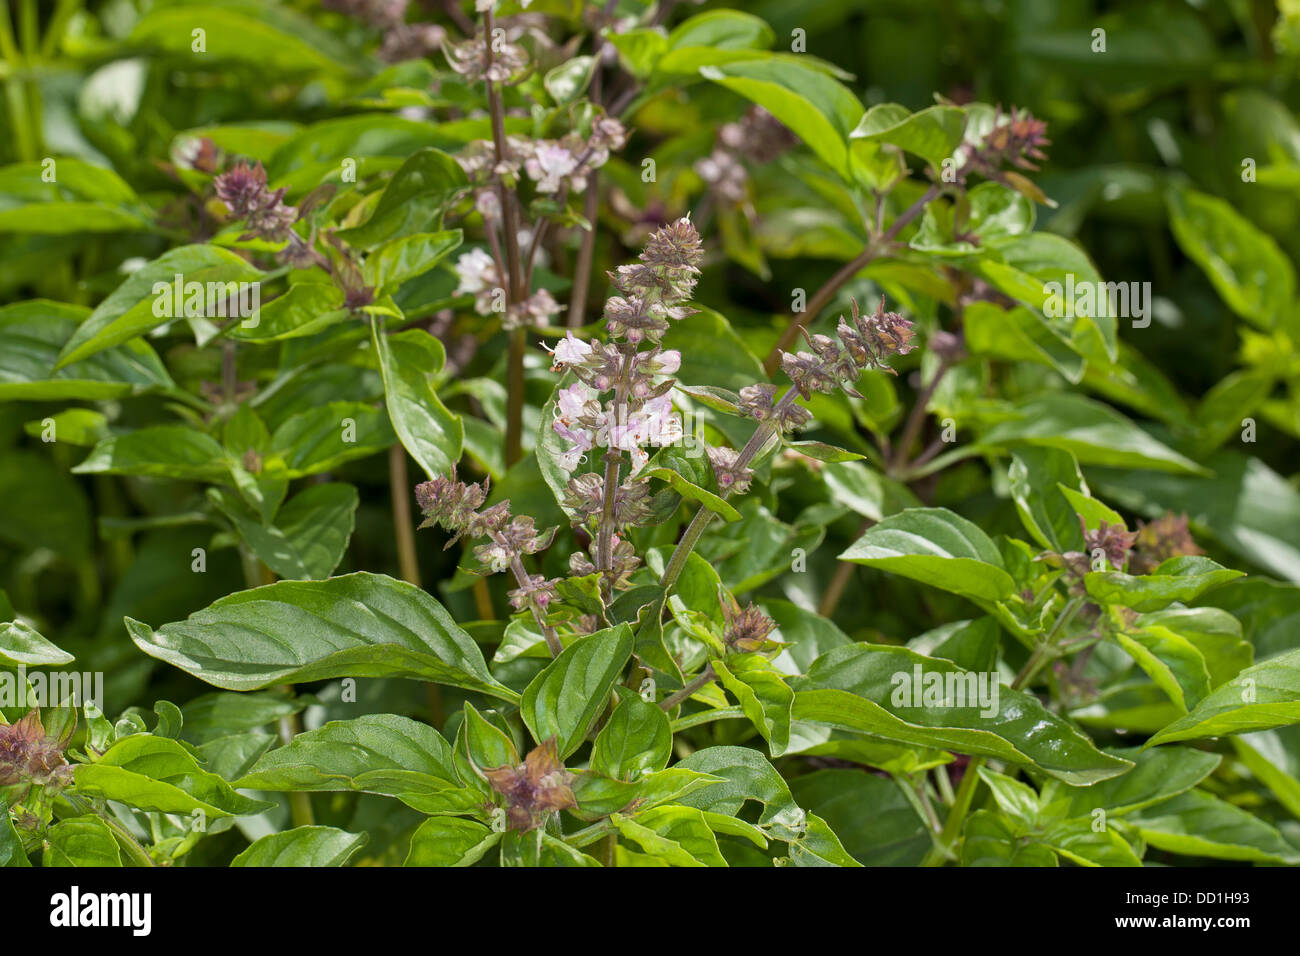 Basil, Thai Basil, Sweet Basil, Basilikum, Basilienkraut, Basilien-Kraut, Ocimum basilicum Stock Photo